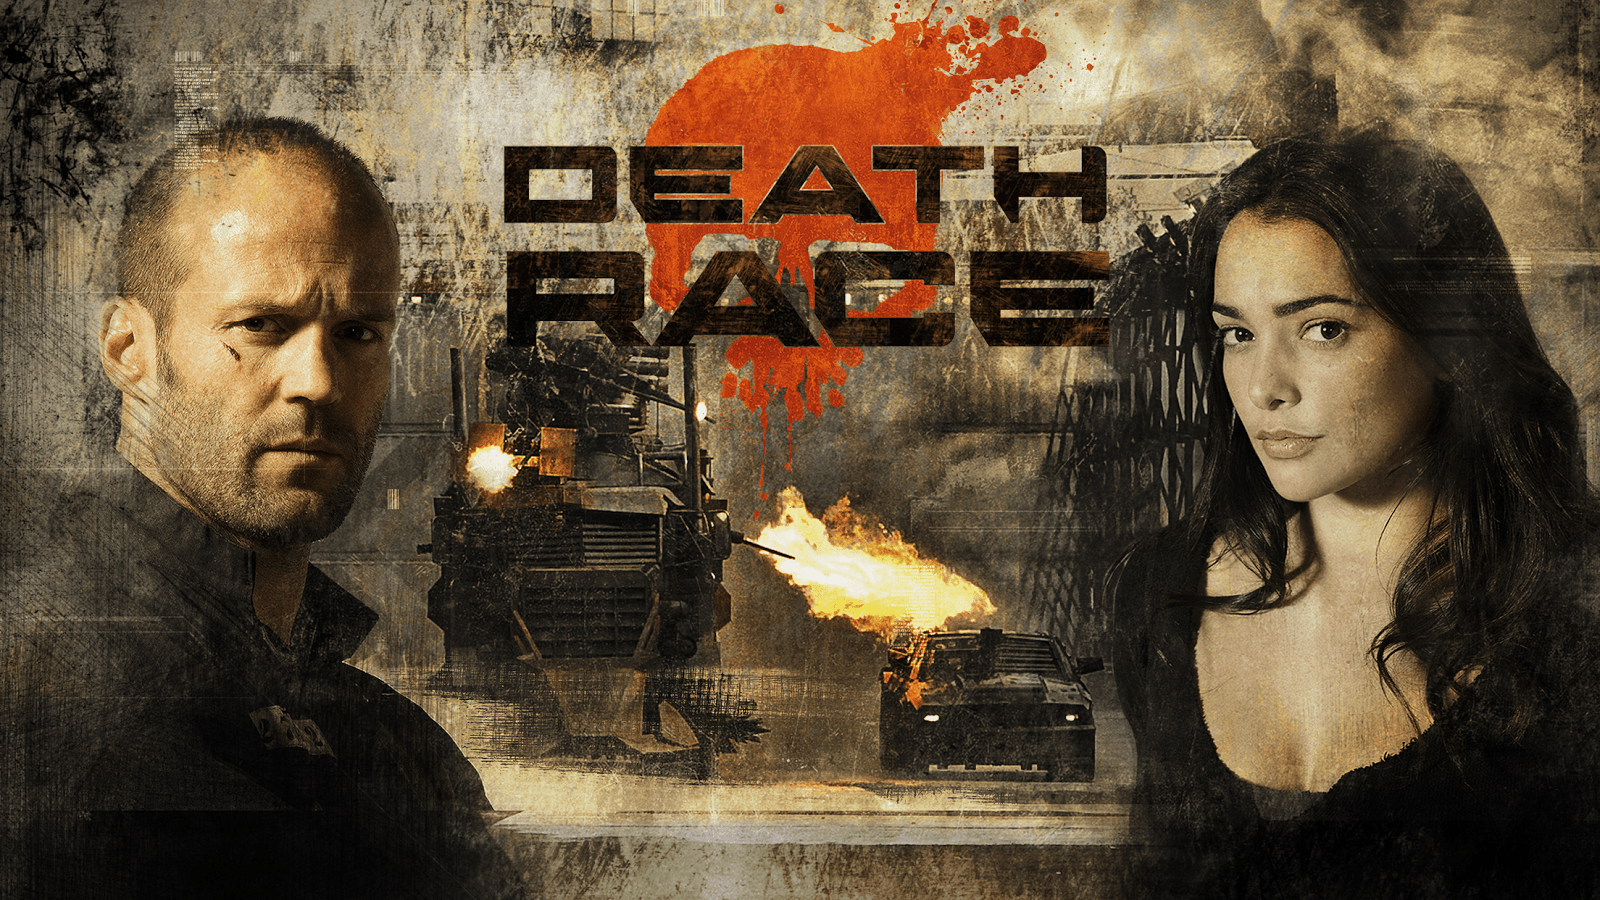 Death Race 2 2010